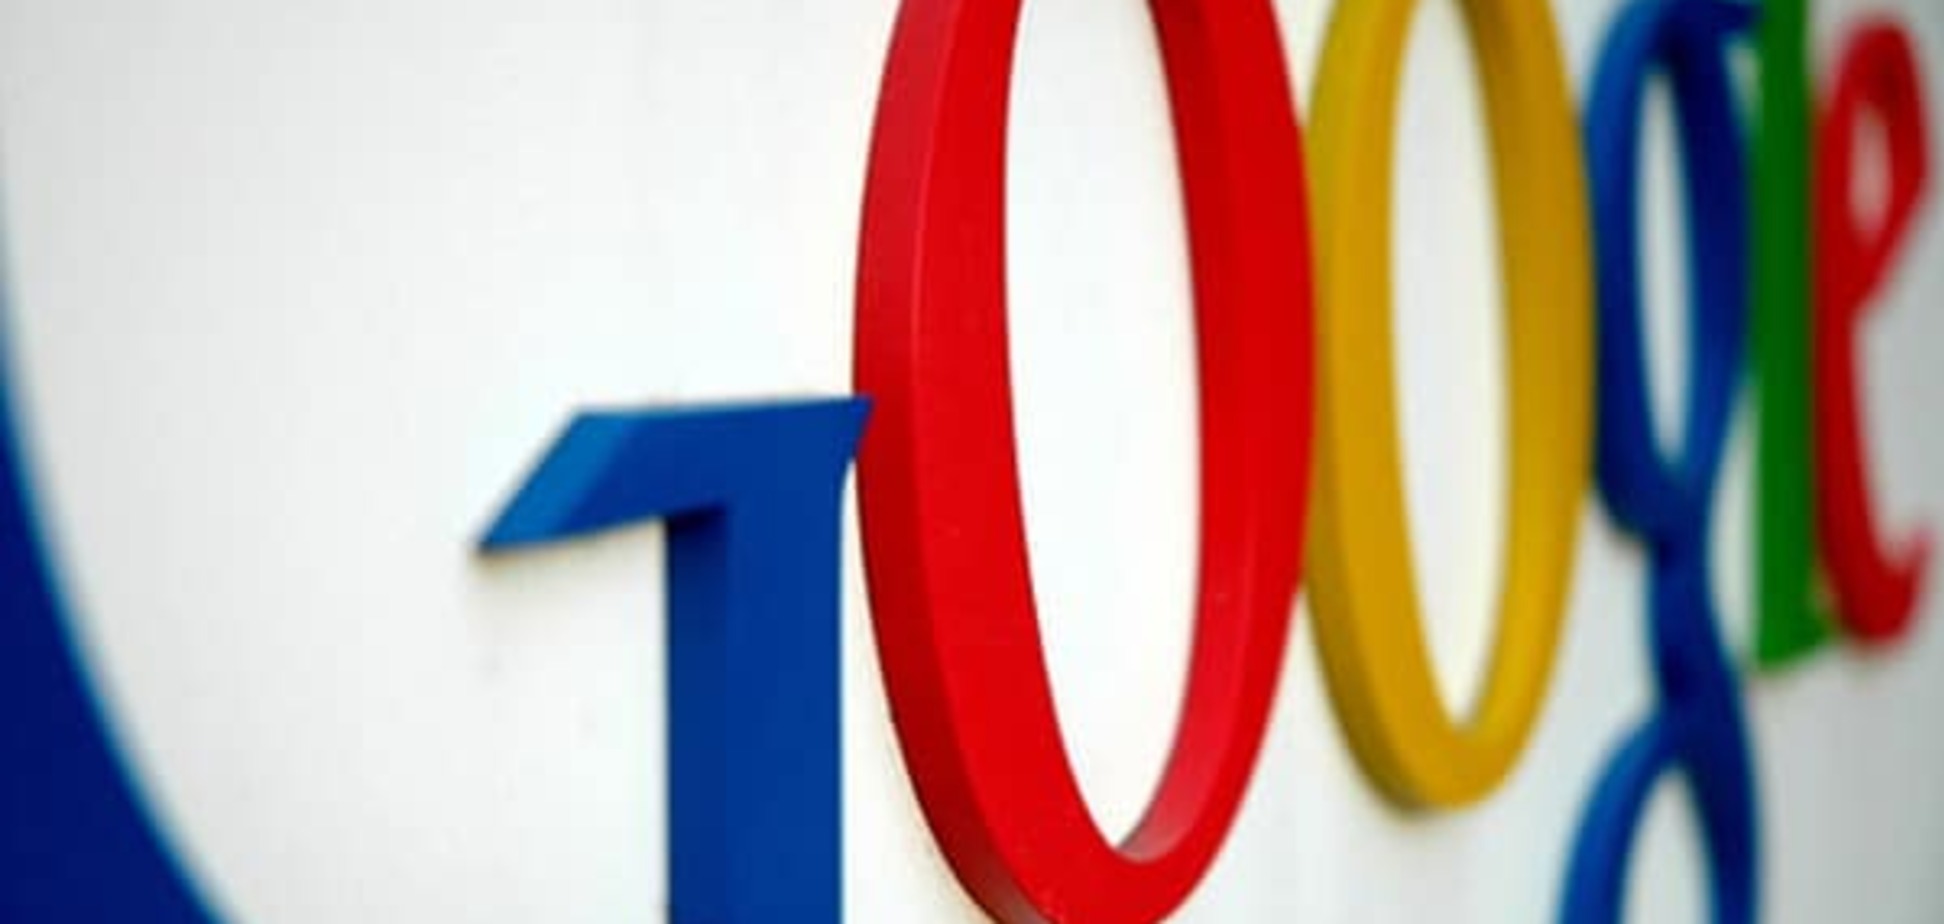 Google і Яндекс потрапили в російських список екстремістських матеріалів